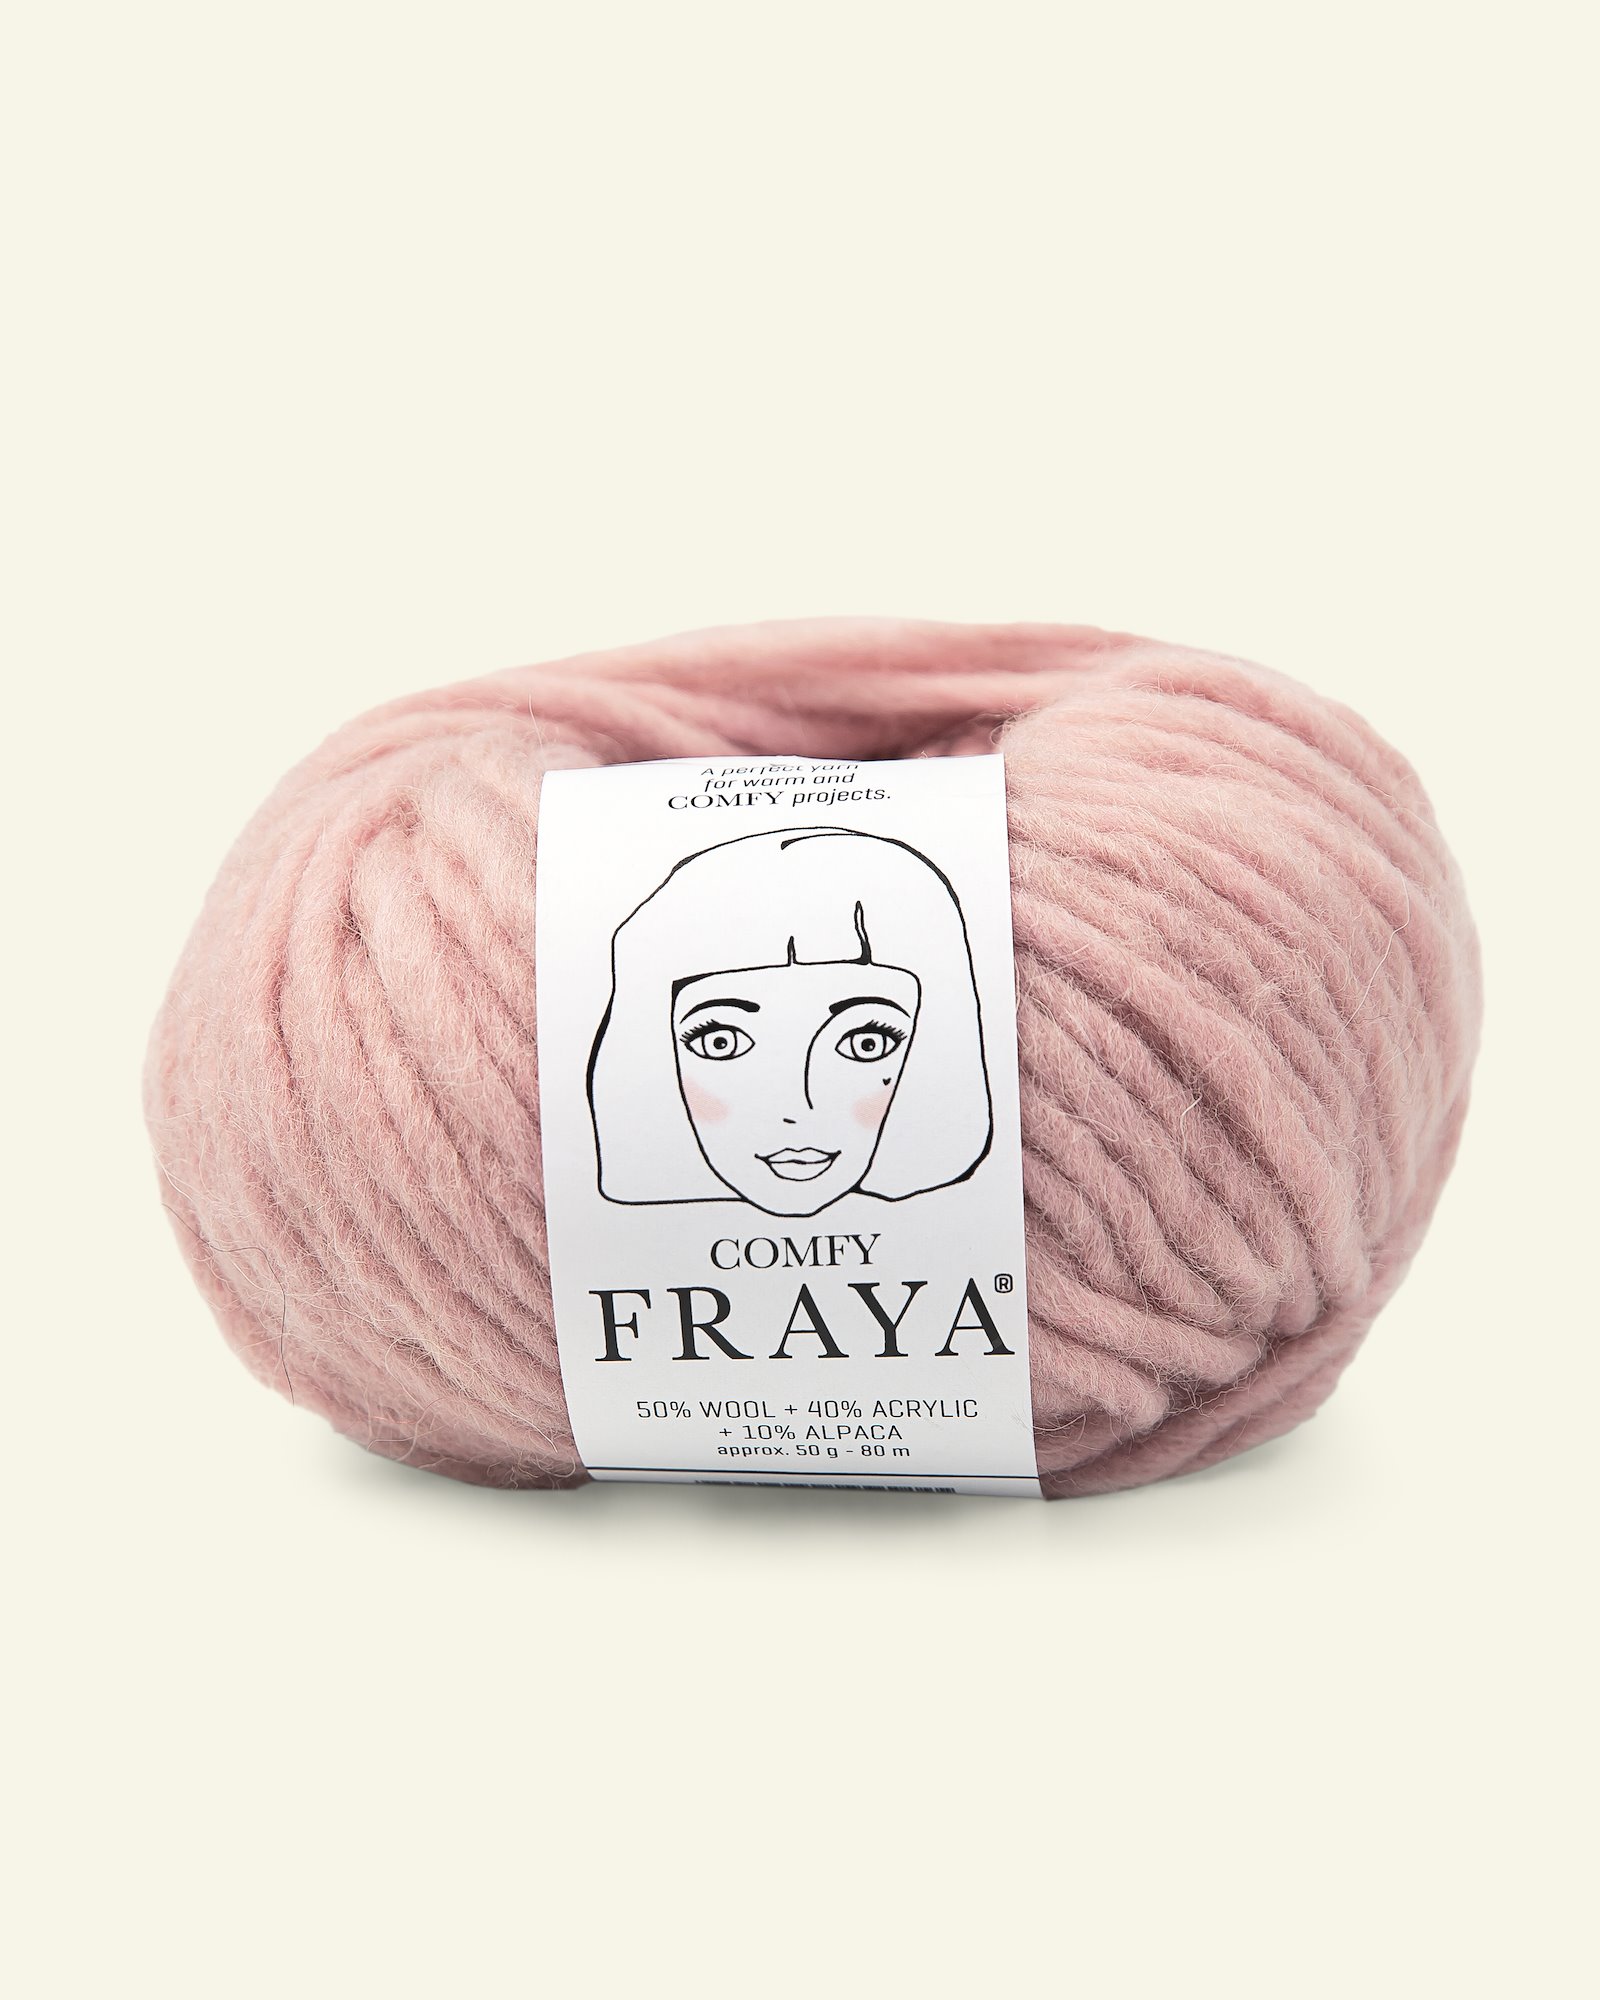 FRAYA, mixed yarn "Comfy", powder 90054838_pack